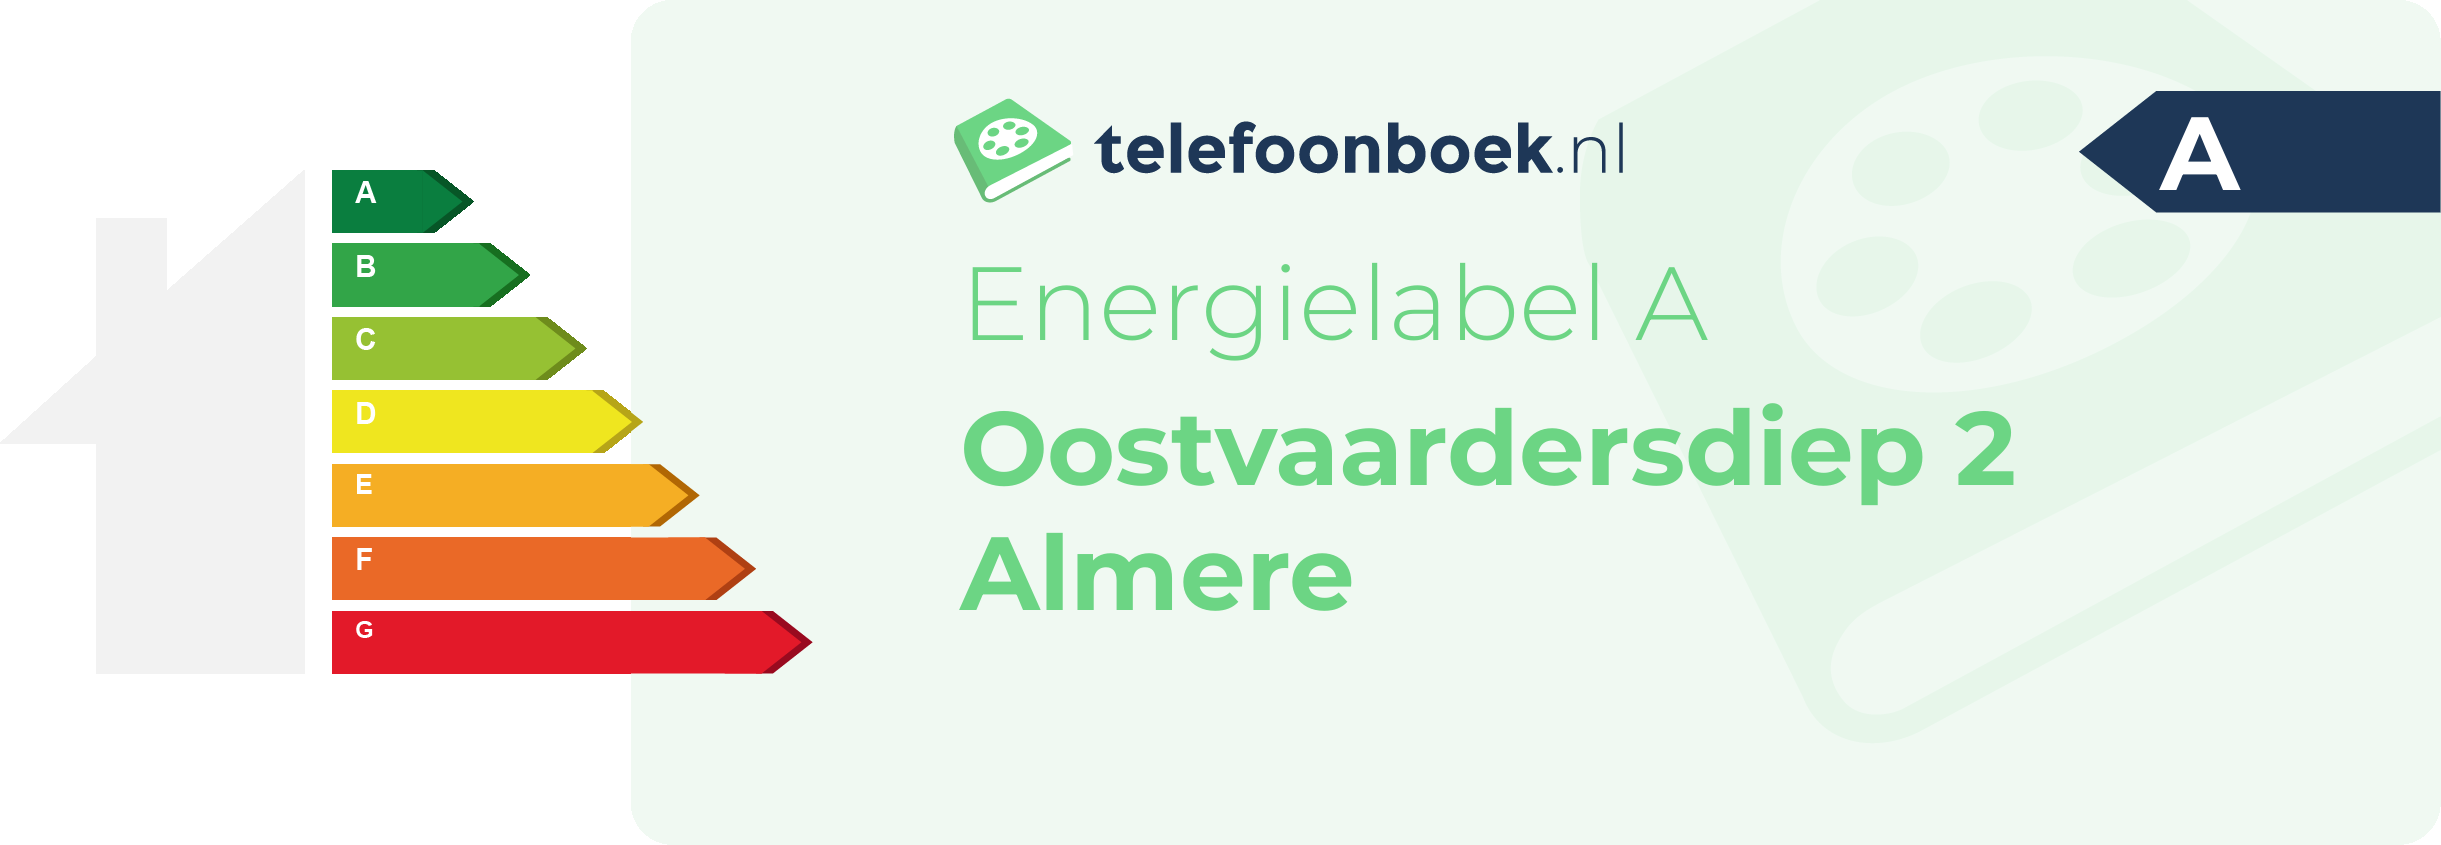 Energielabel Oostvaardersdiep 2 Almere